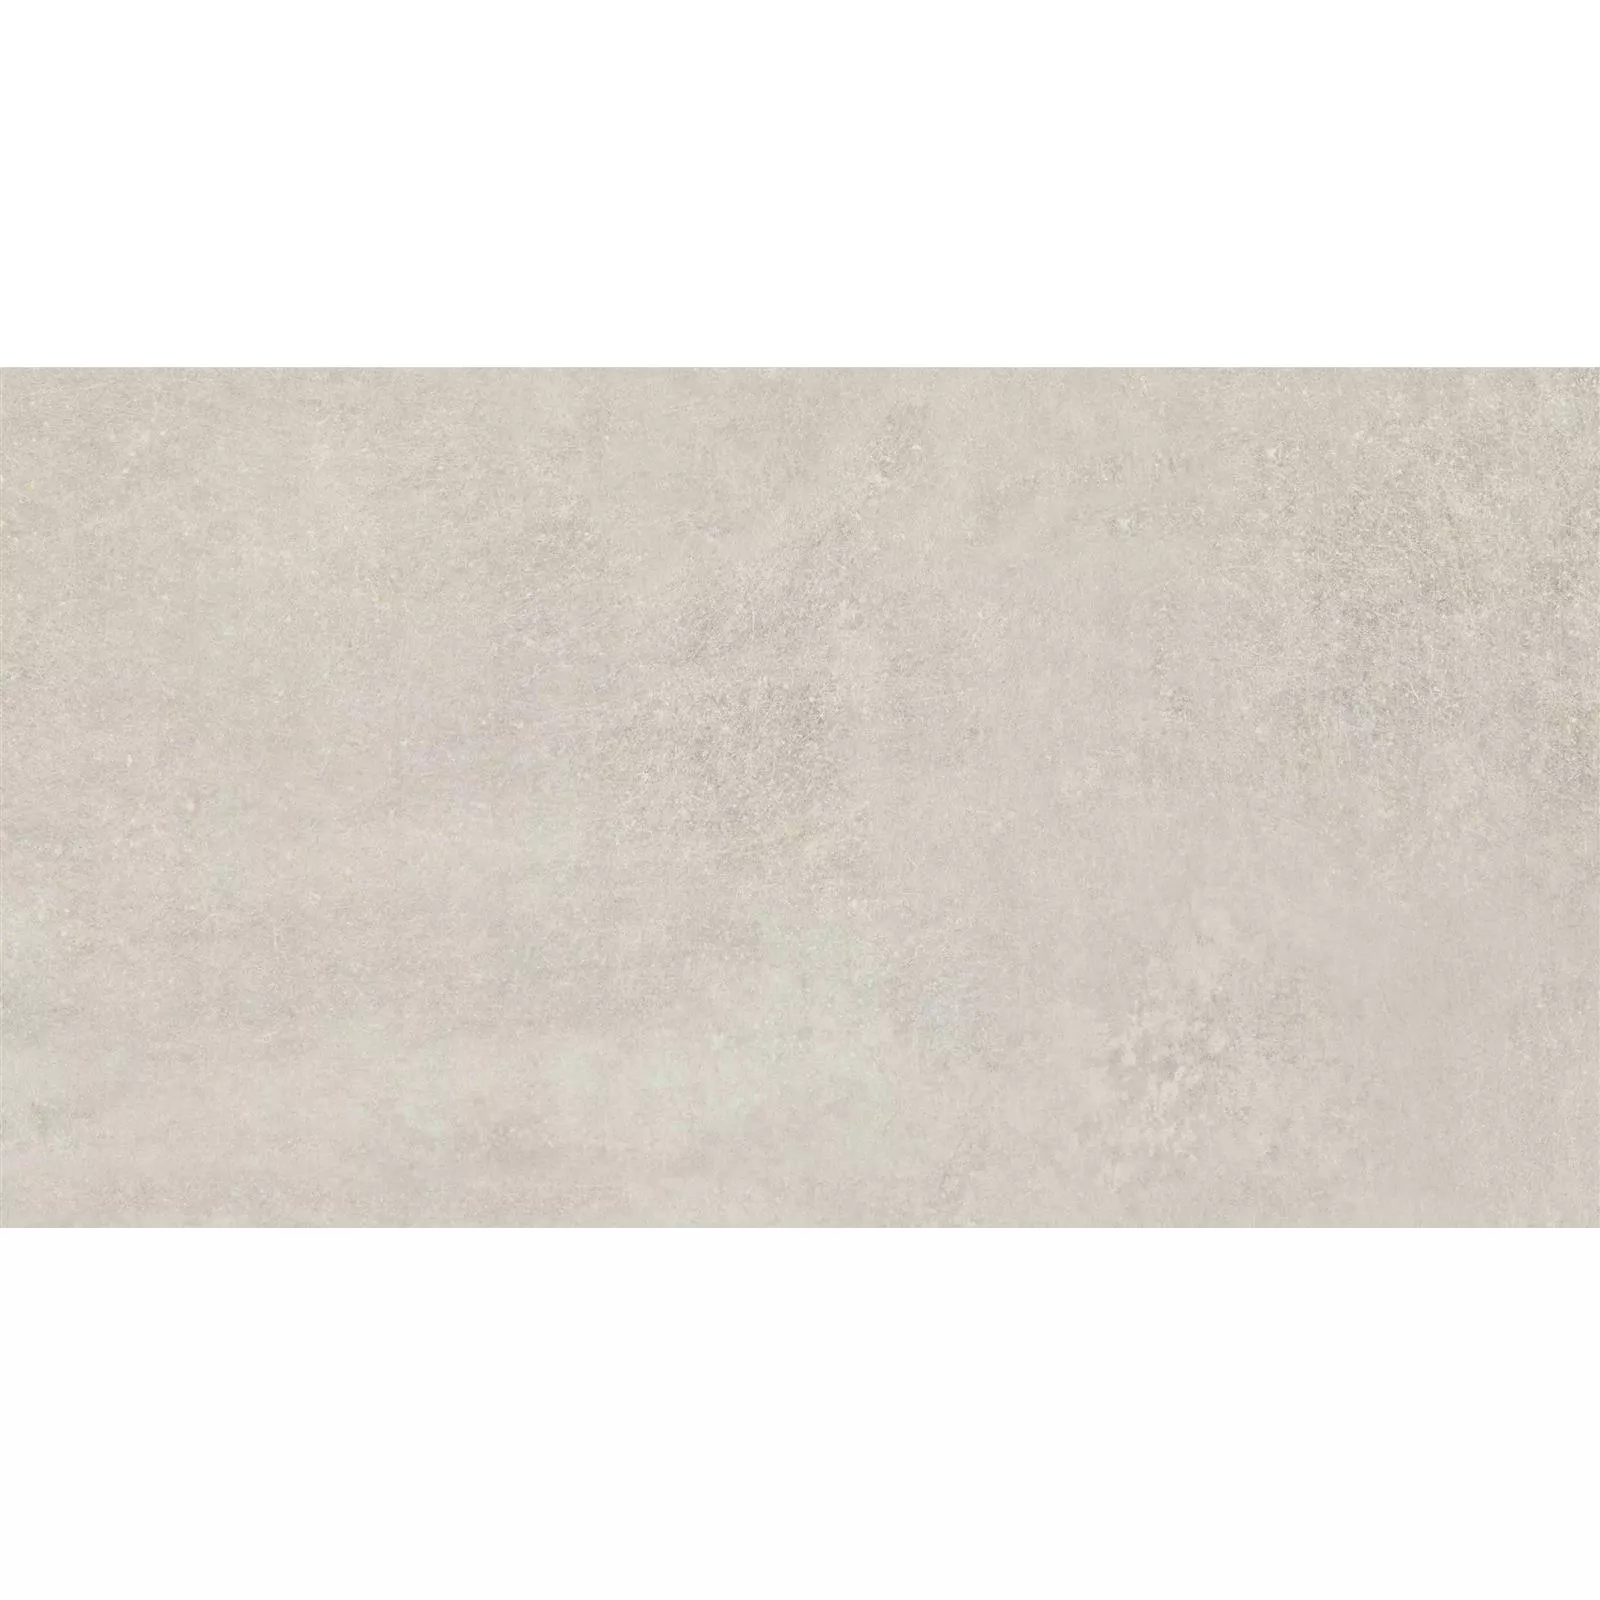 Vzorek Podlahové Dlaždice Peaceway Slonová Kost 30x60cm